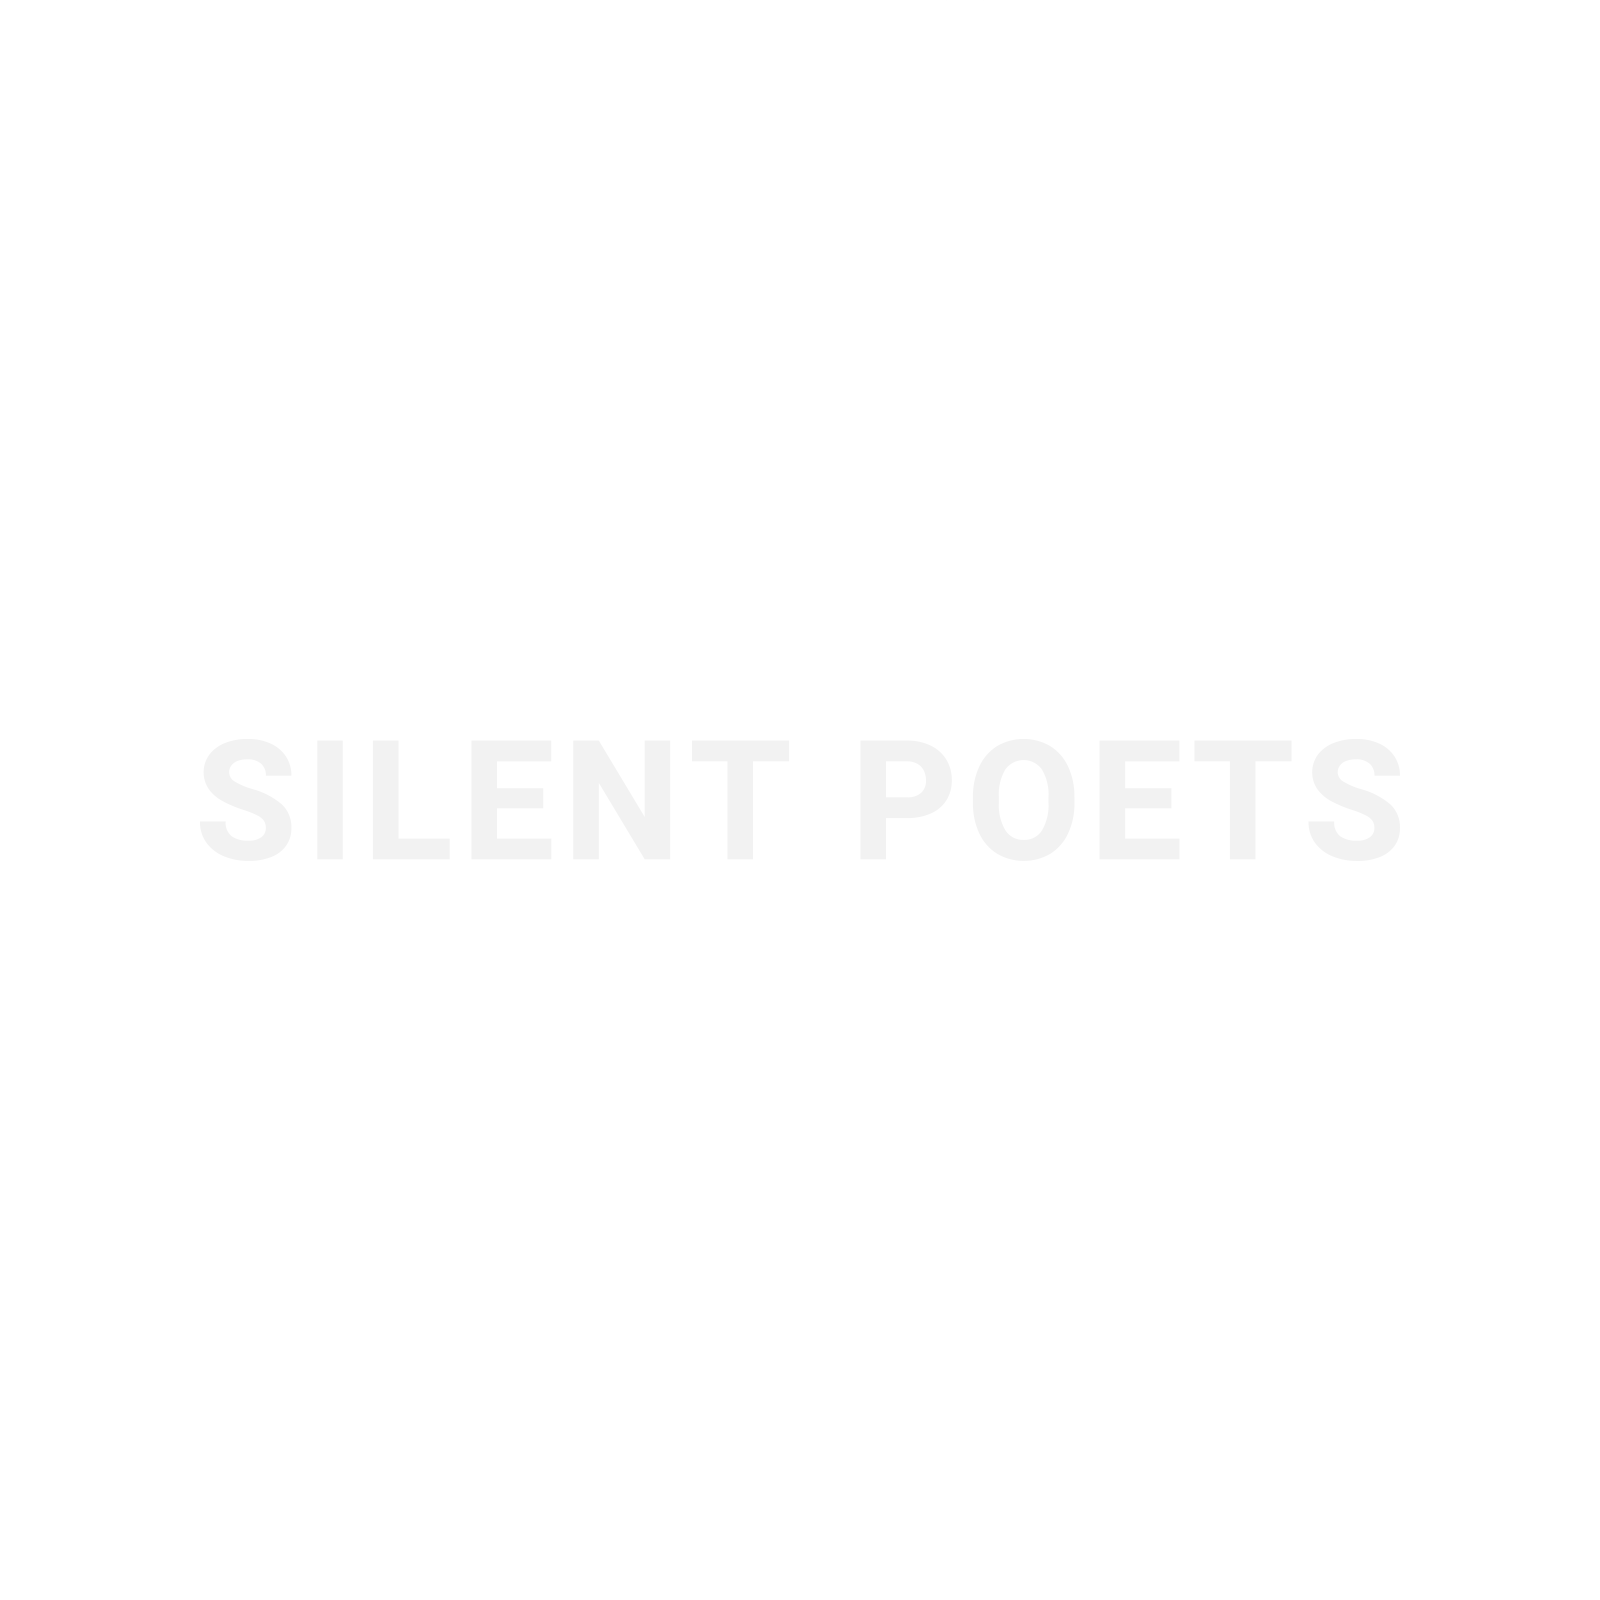 SILENT POETS MEETS MAD PROFESSOR “DUB REMIXES EP”